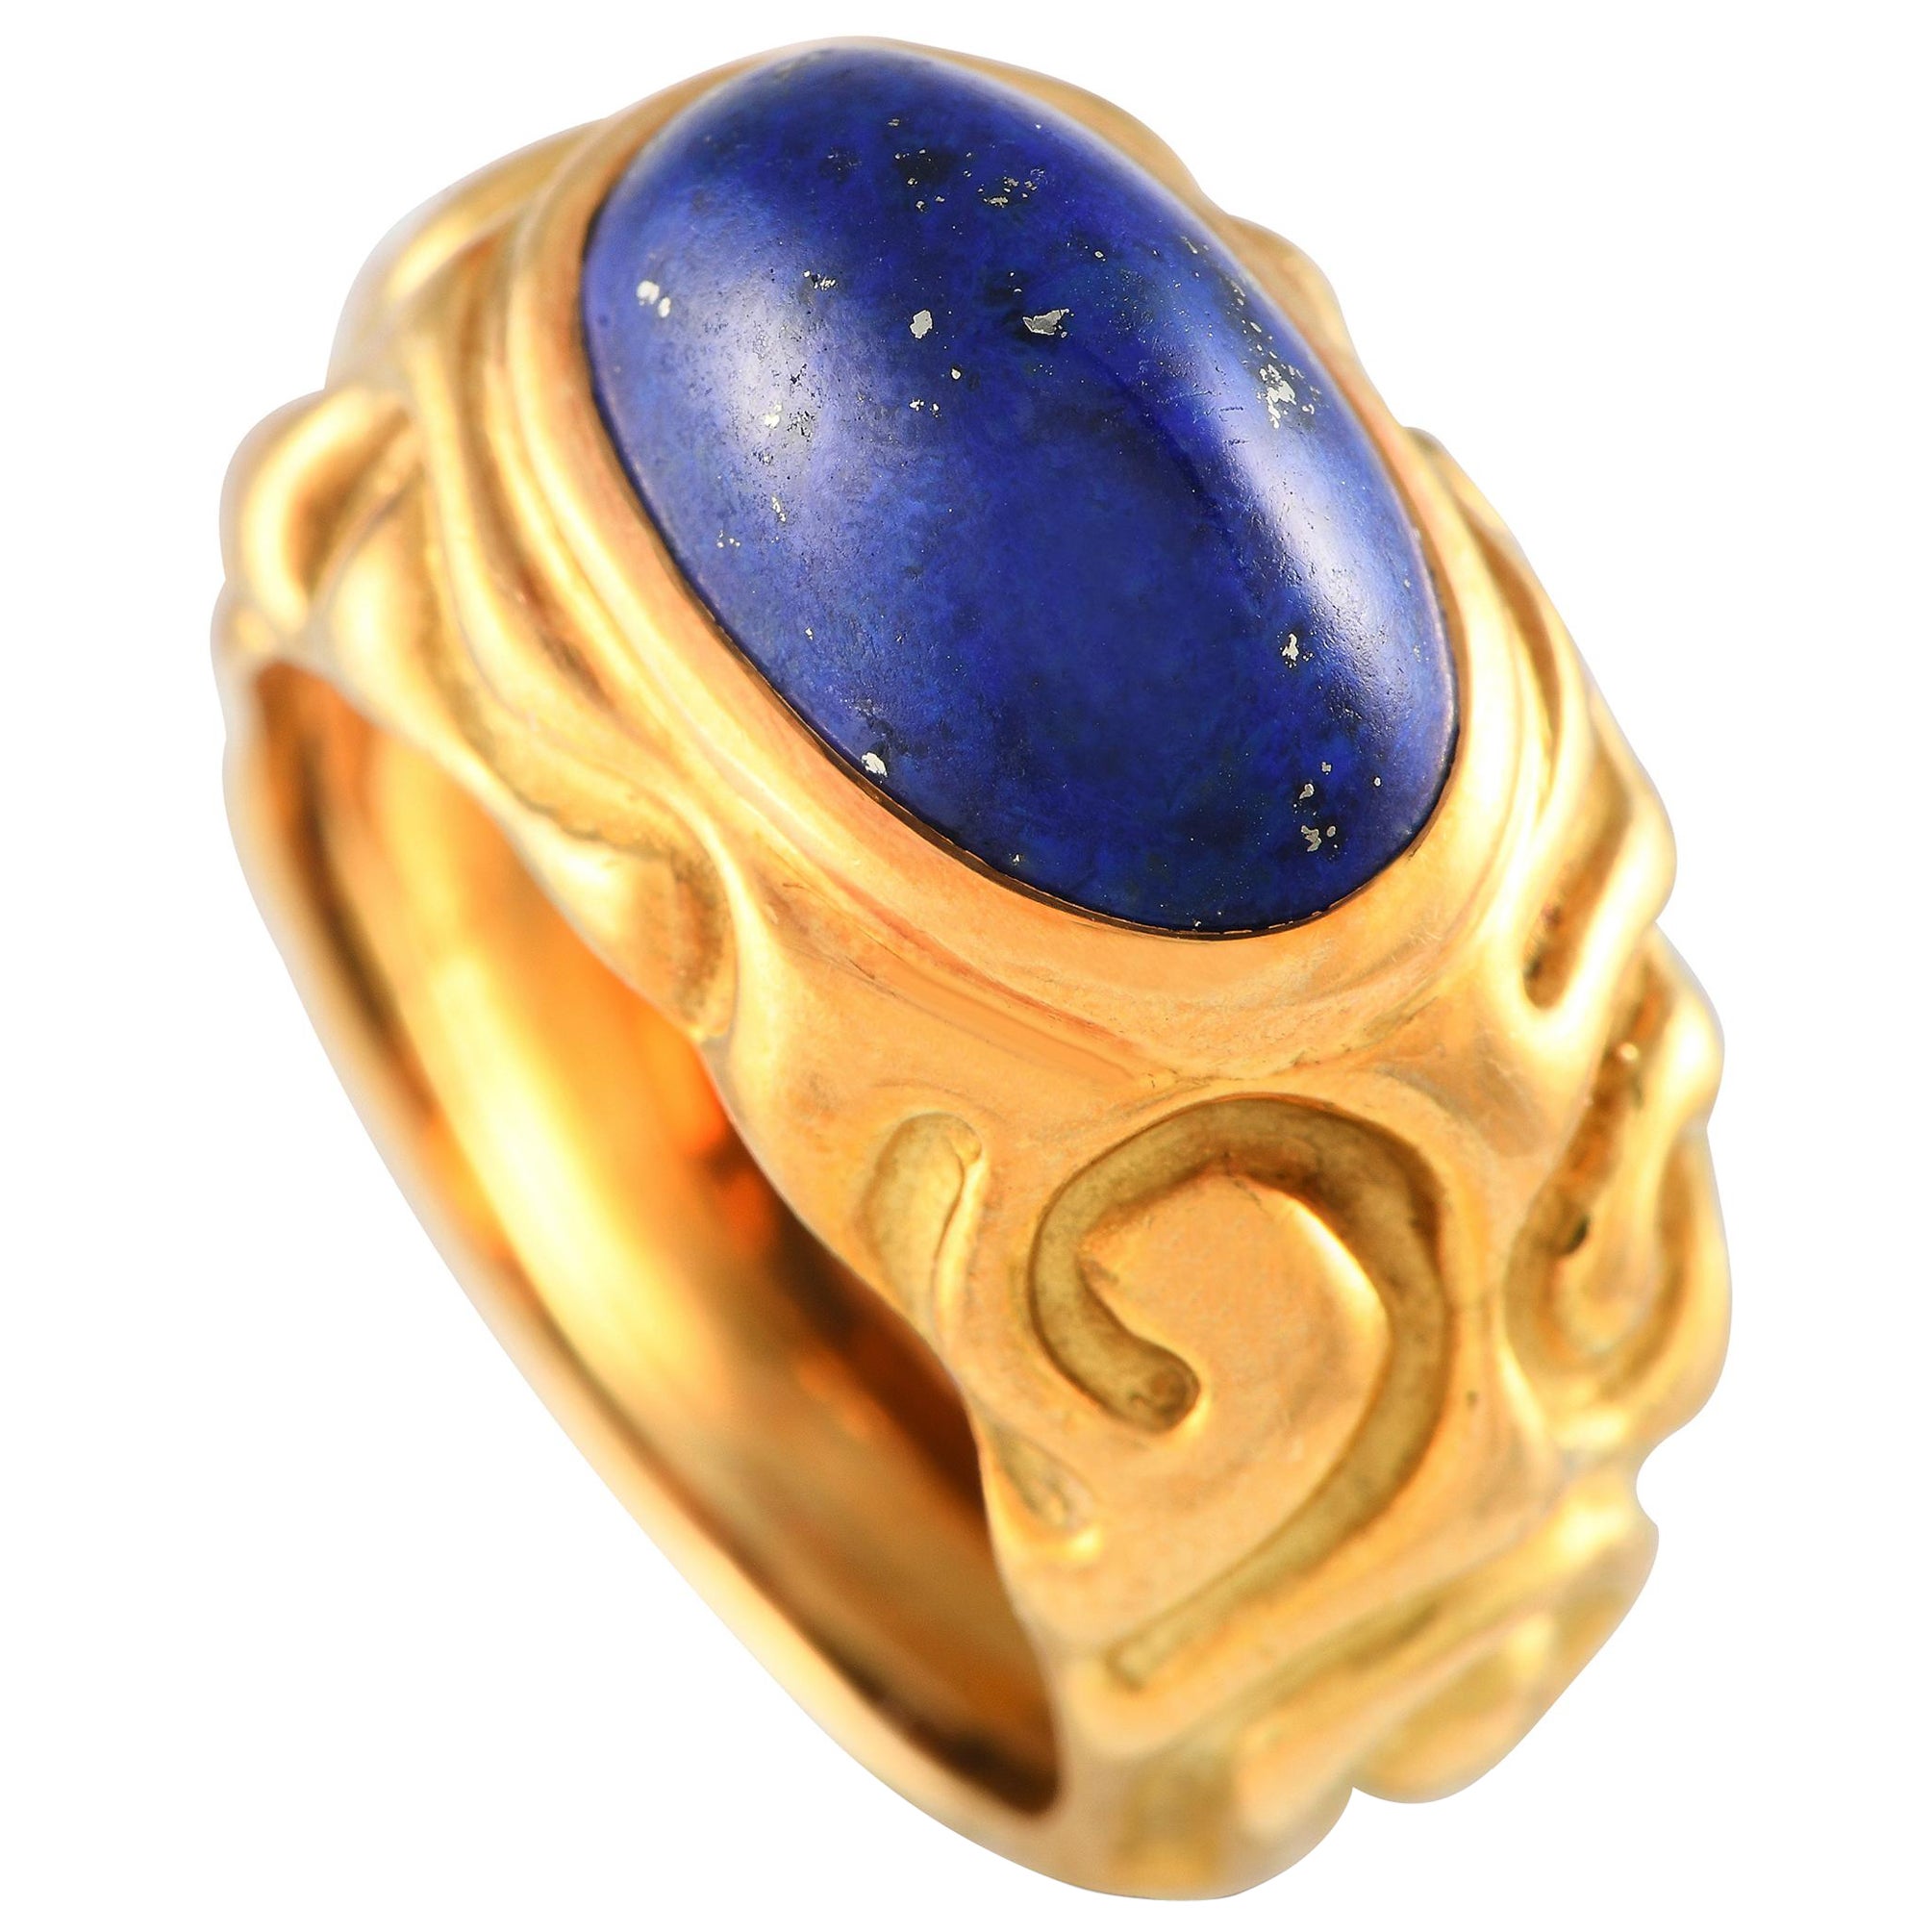 Elizabeth Gage 18K Yellow Gold Lapis Lazuli Carved Ring